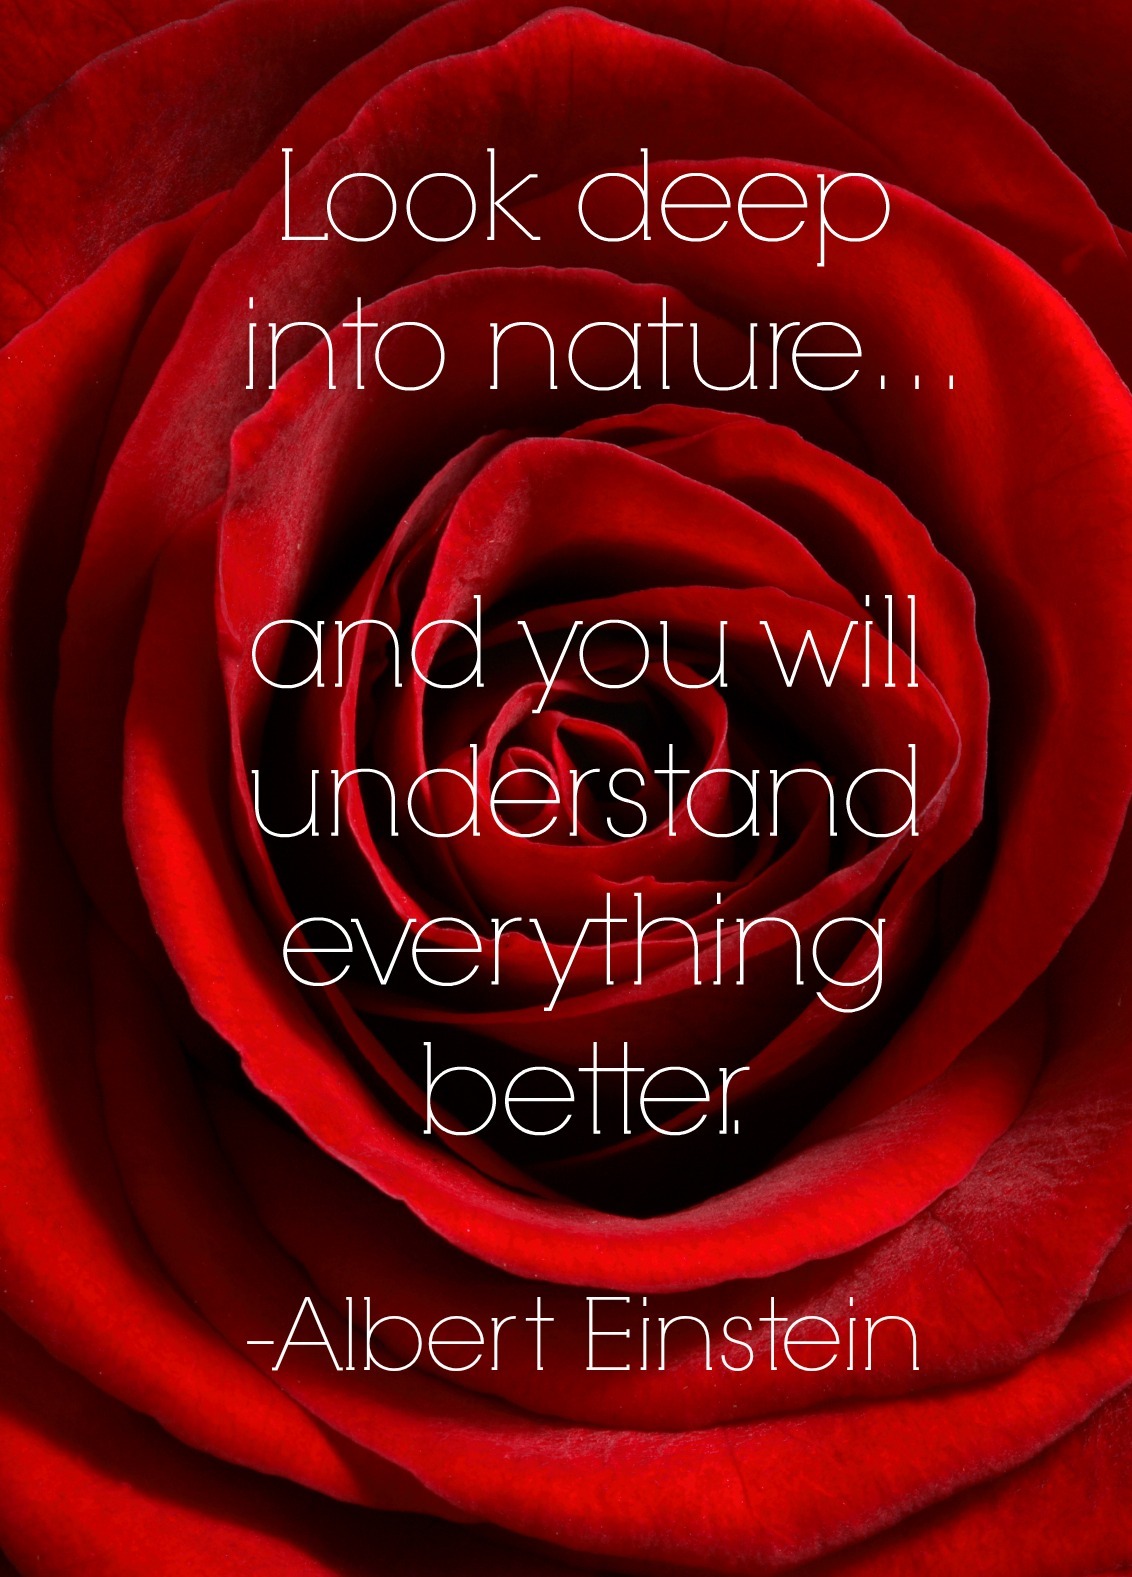 best gardening quotes Albert Einstein